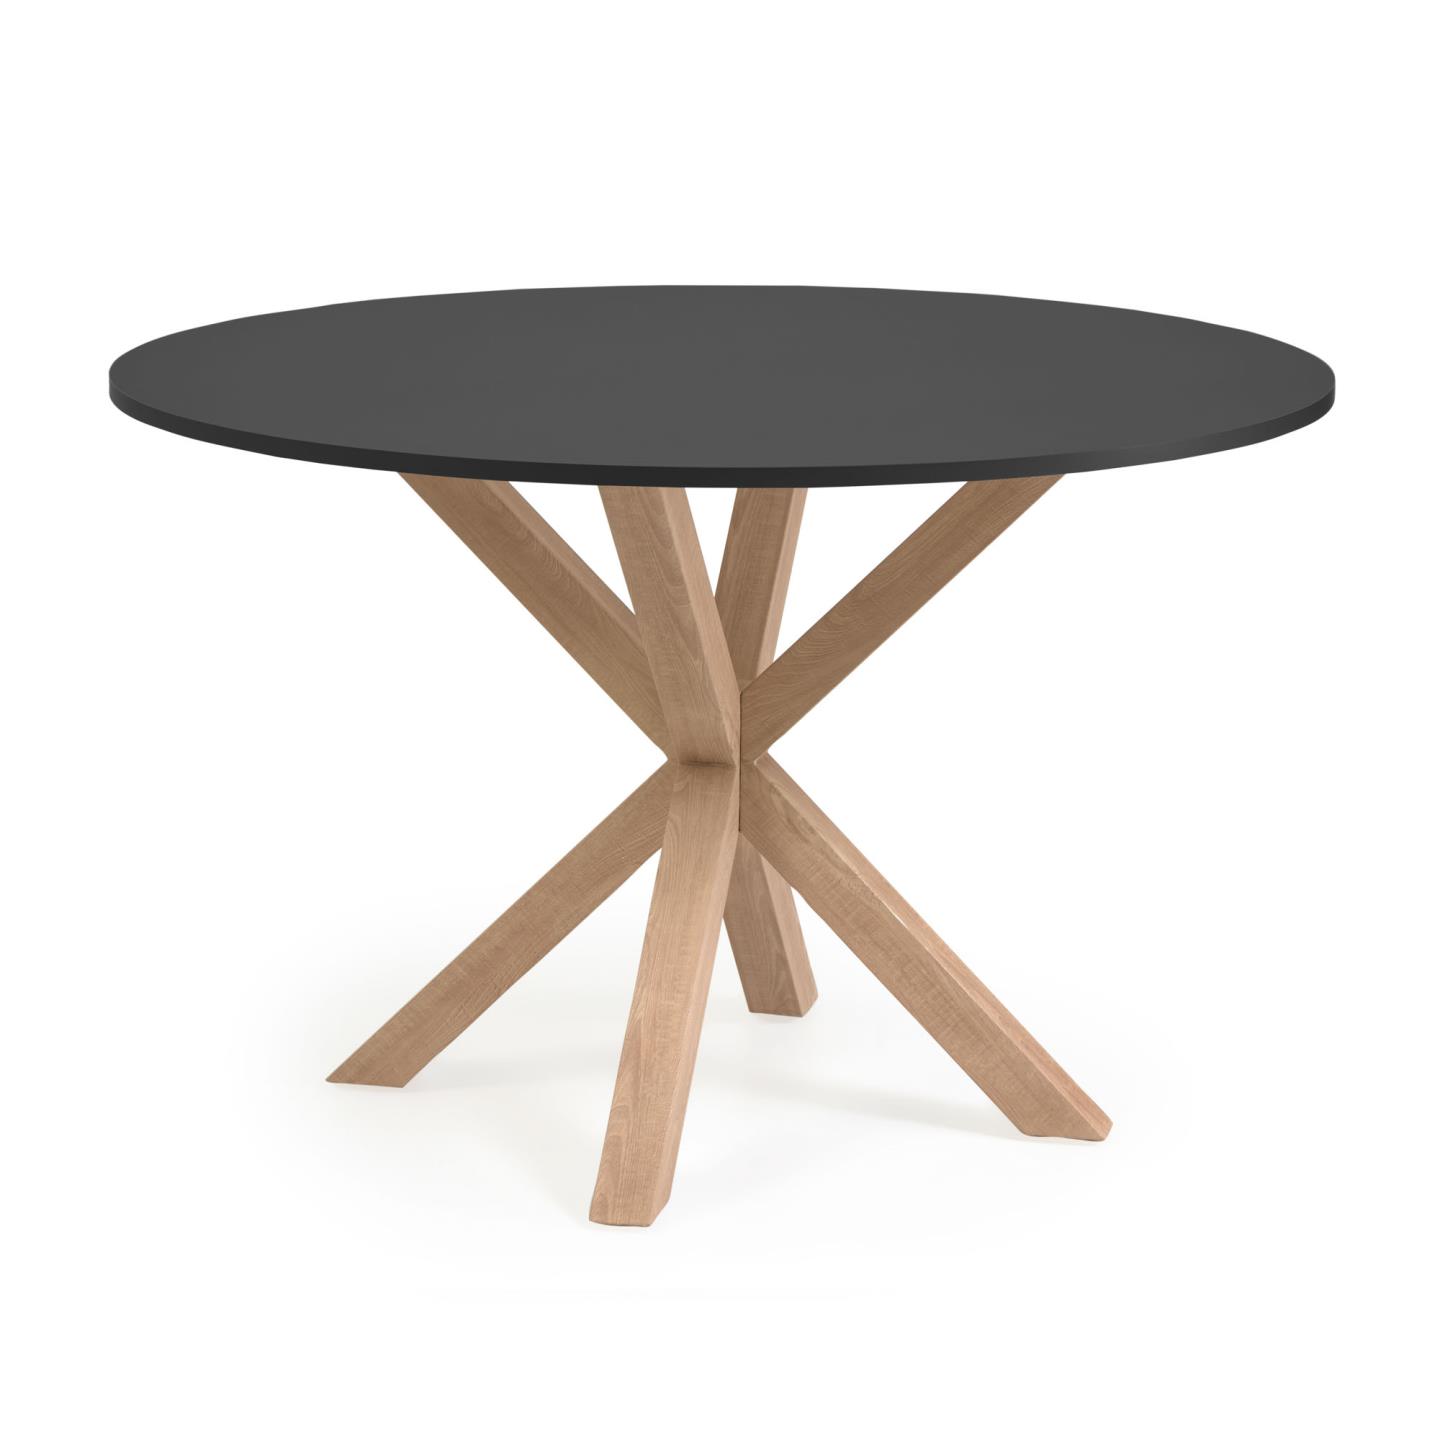 LAFORMA Full Argo matbord, runt - svart trä och naturstål med träeffekt